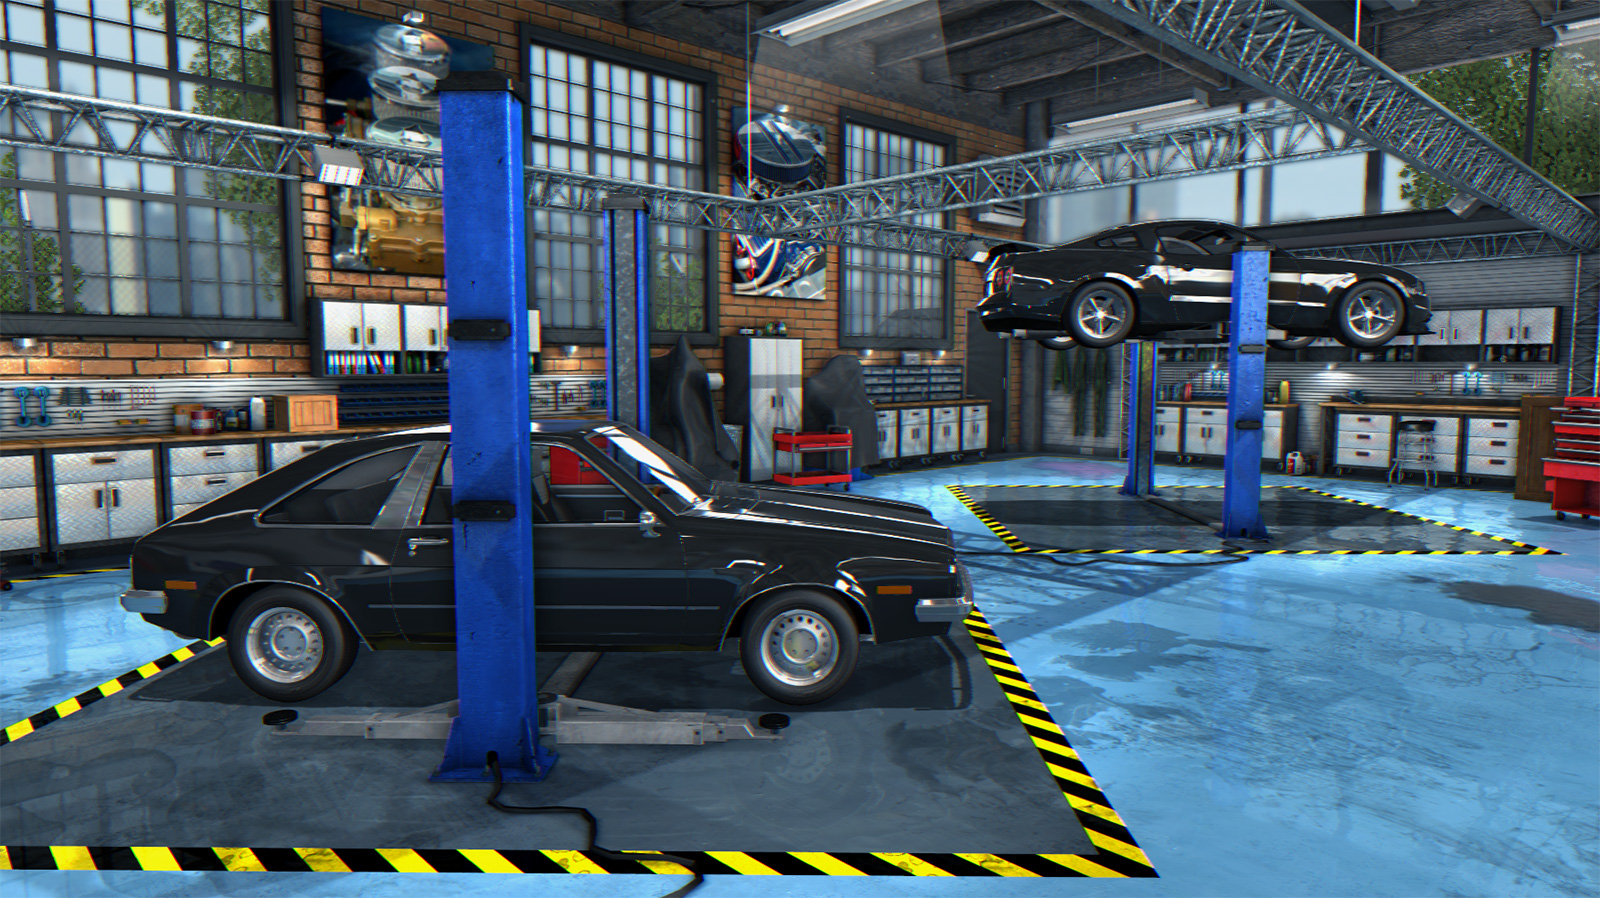 Car Mechanic Simulator 2015, game de conserto de carros, chega em